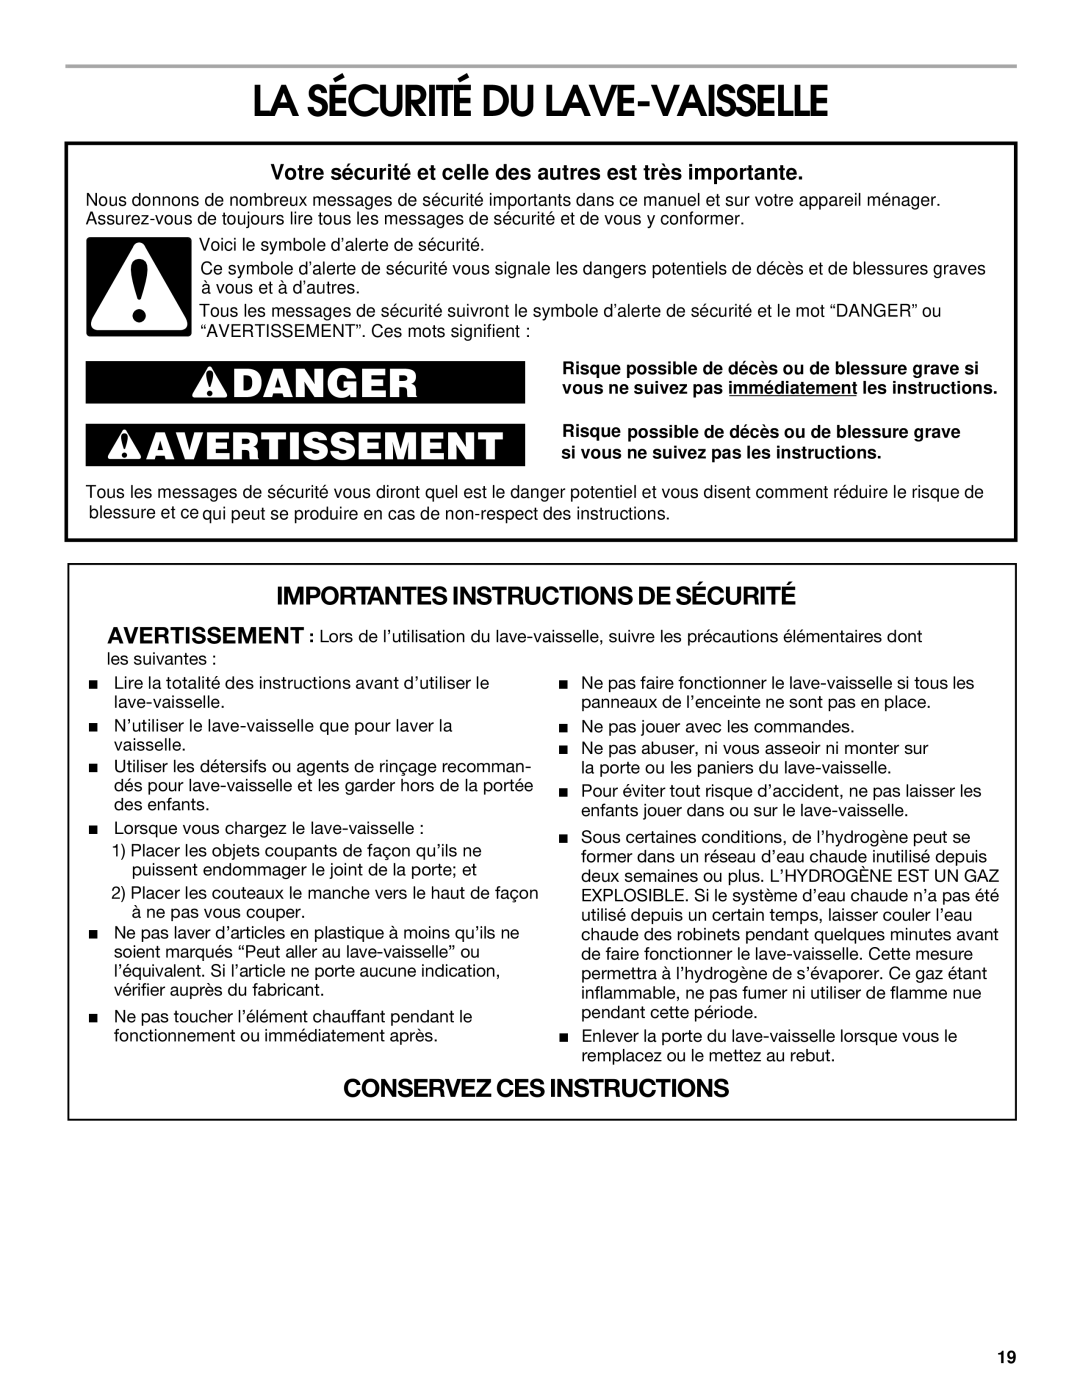 Whirlpool RUD3000 La Sécurité Du Lave-Vaisselle, Importantes Instructions De Sécurité, Conservez Ces Instructions, Danger 